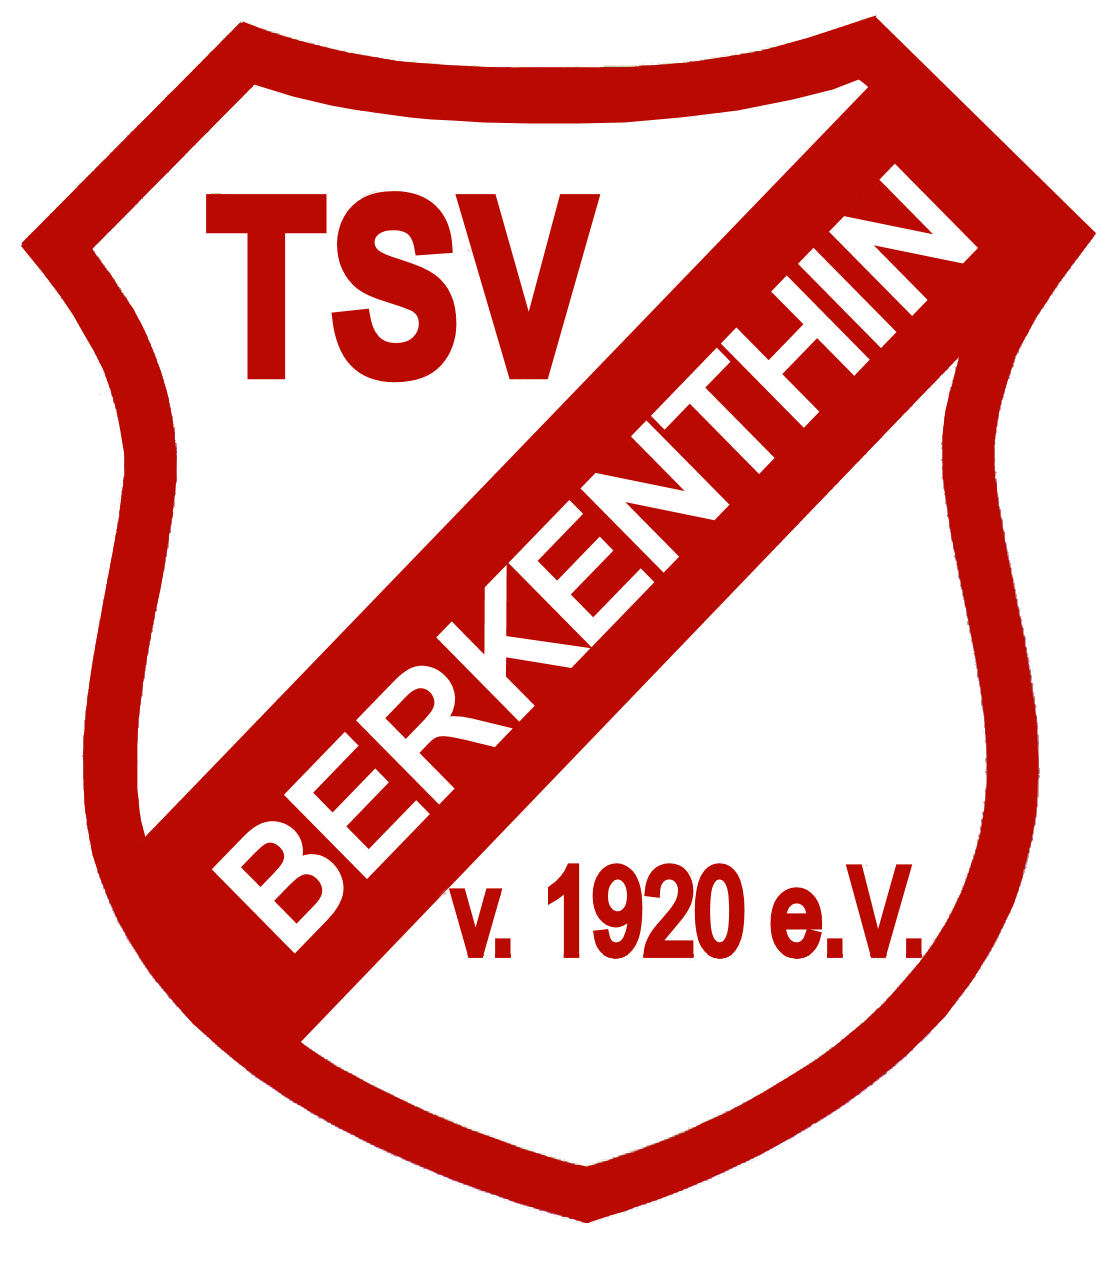 TSV Berkenthin Erneut Gastgeber Für Die Landessichtung Der DfB-Talentförderung